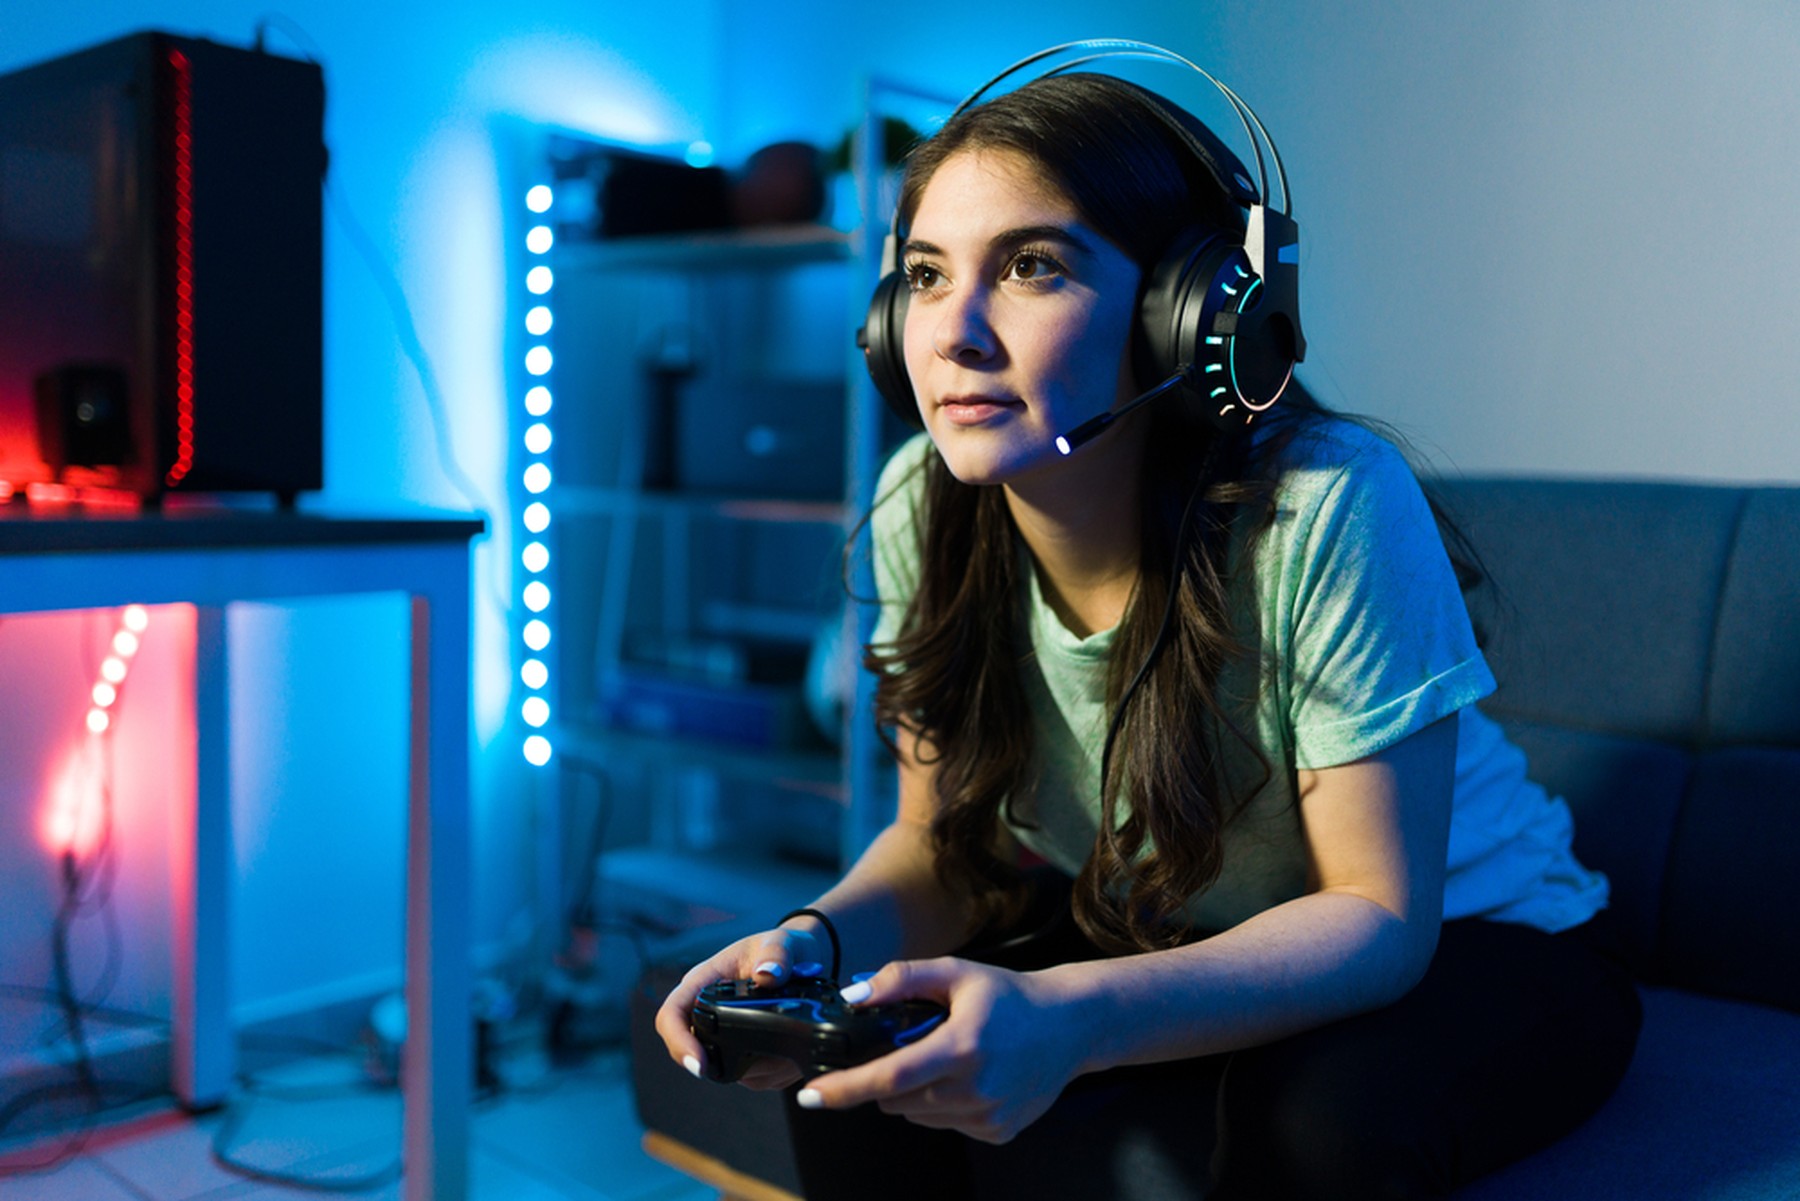 Chica joven con el pelo largo sentada en un sofá jugando a videojuegos. Lleva unos auriculares de gamer con micrófono y de fondo se ven luces led azules y rojas